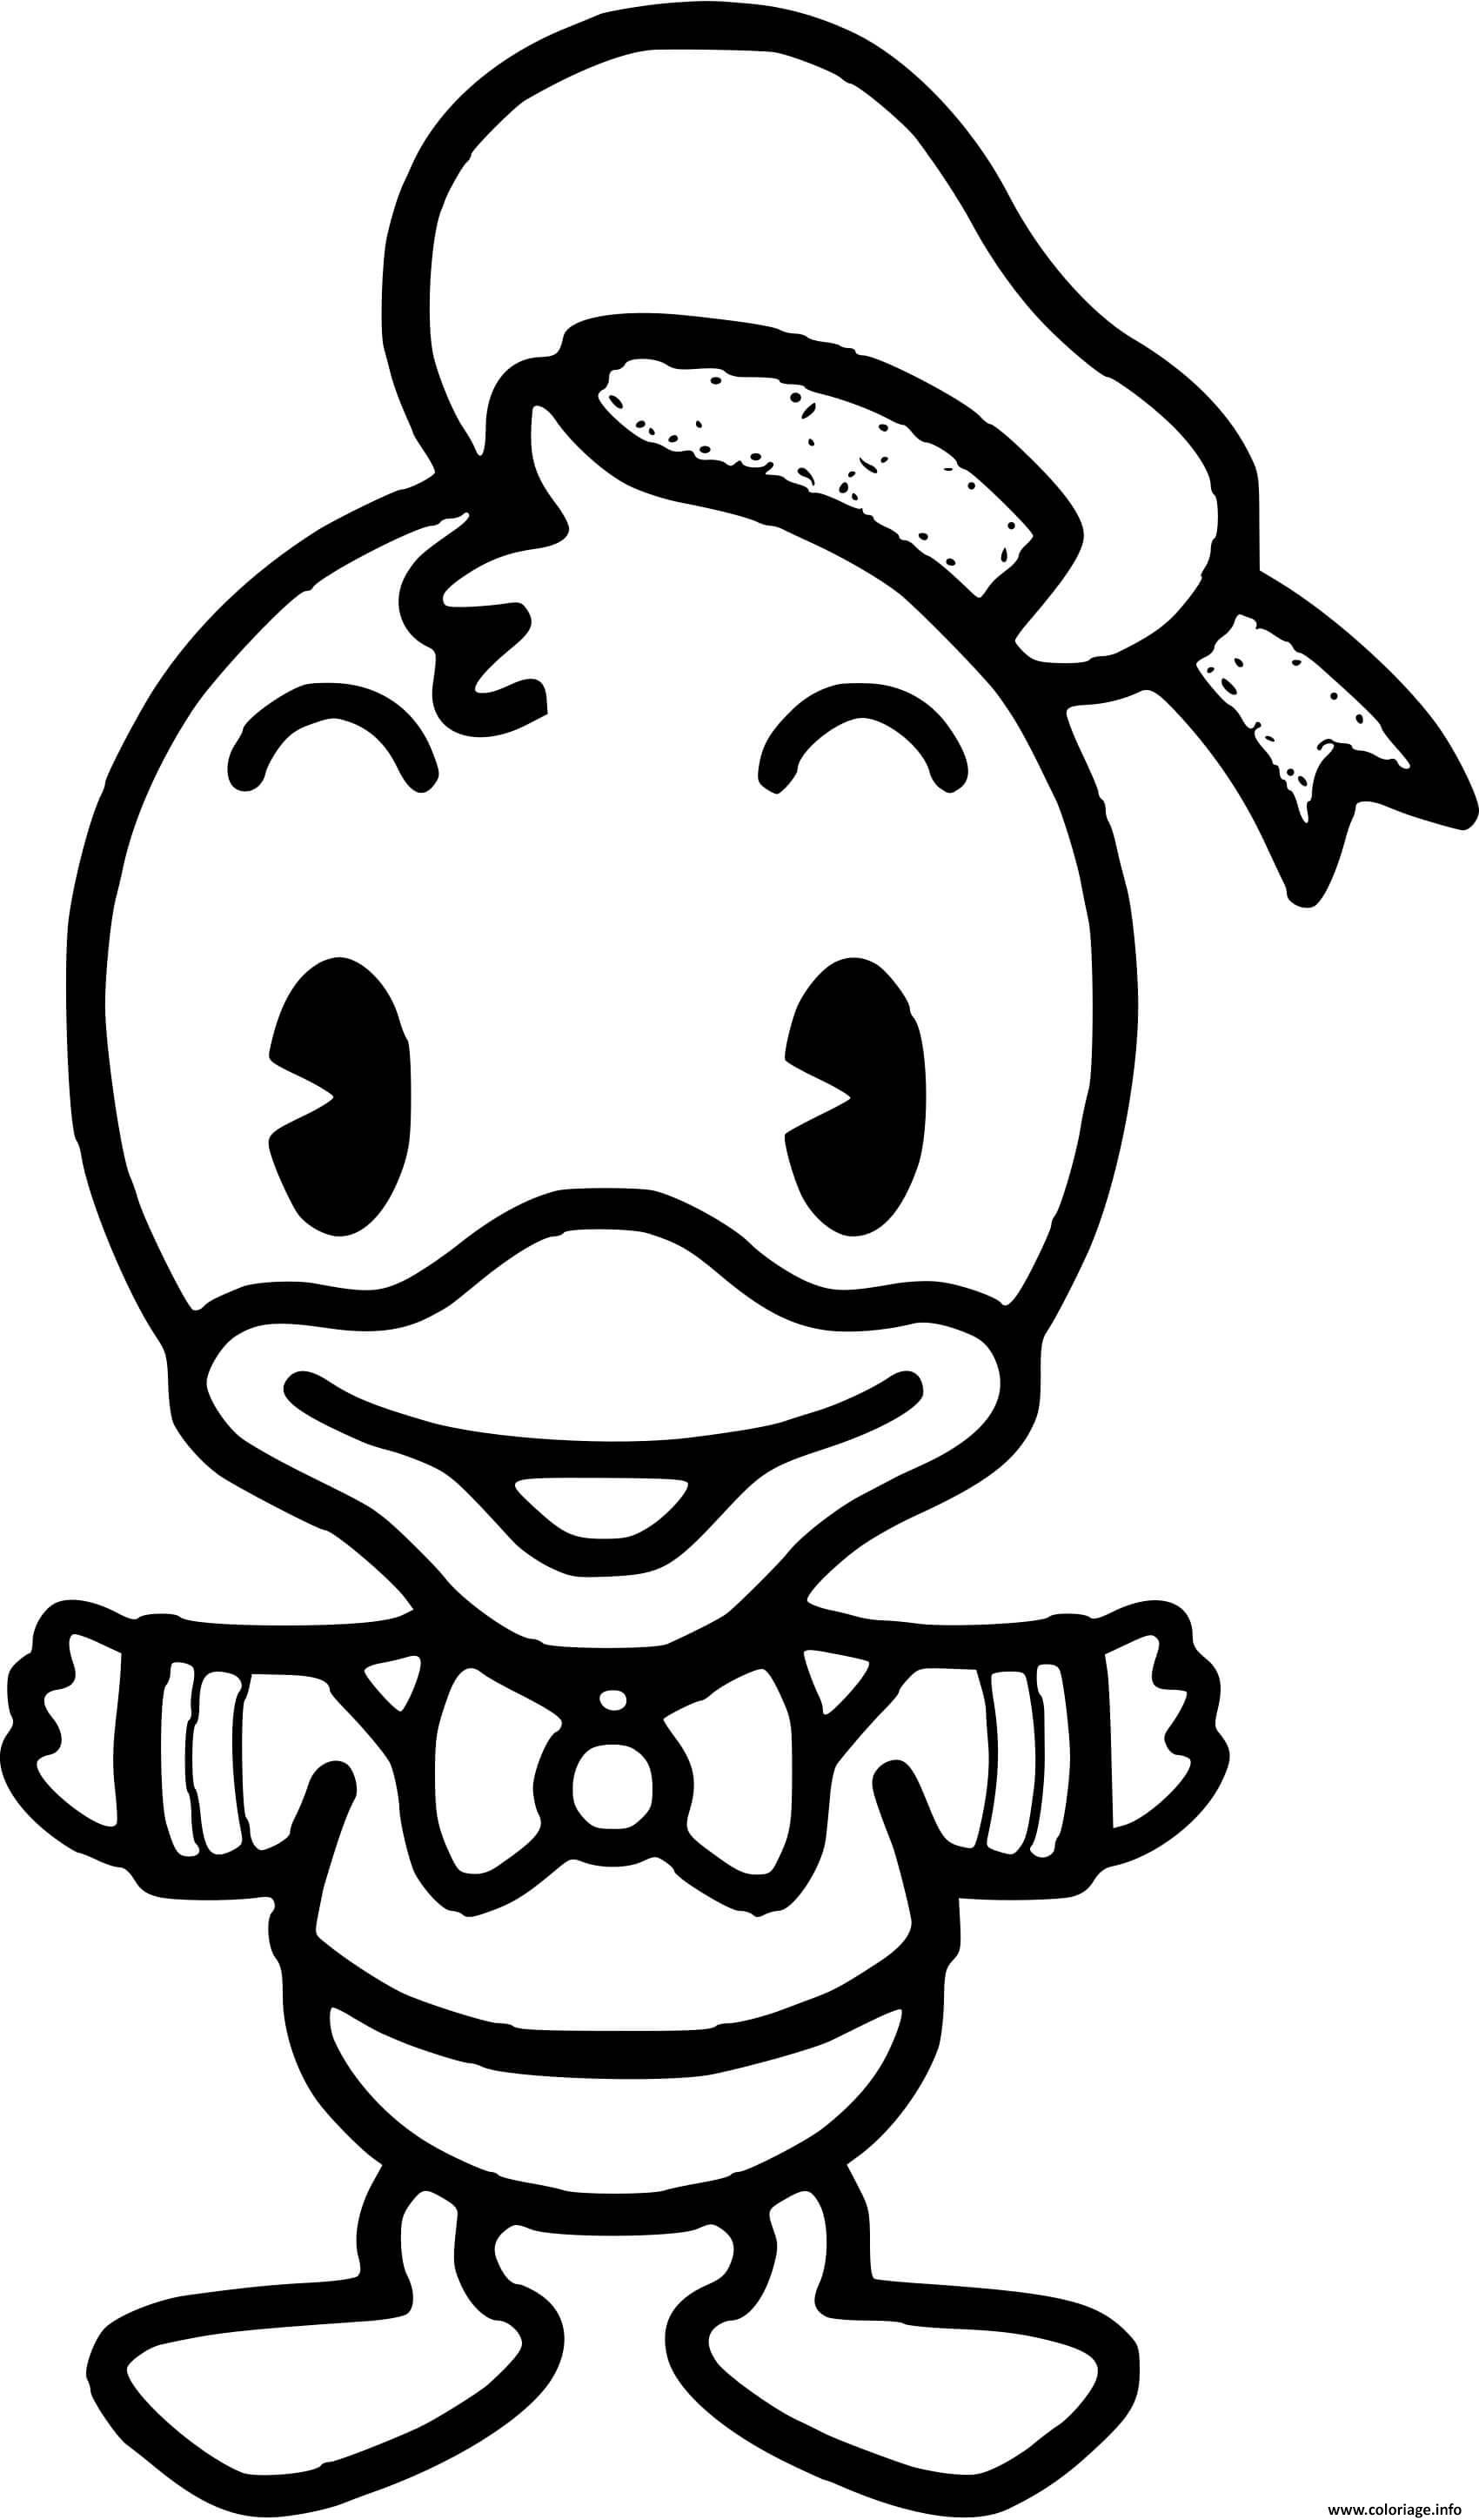 Dessin donald duck adorable bebe Coloriage Gratuit à Imprimer